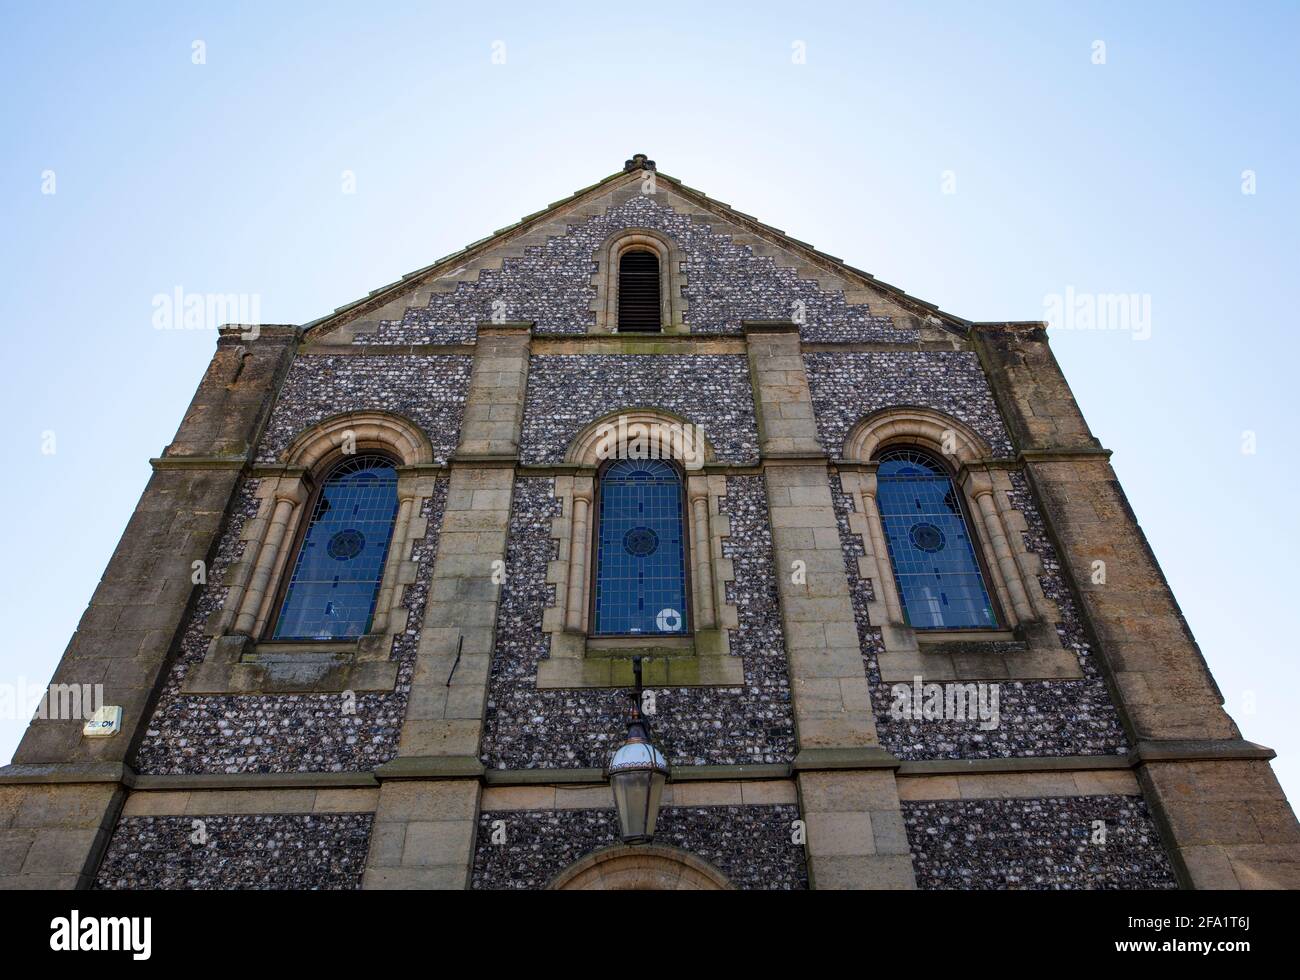 La Trinity Congregational Church, o Union Chapel, nella città mercato di Arundel, sulle Downs del Sud, nel Sussex occidentale, Regno Unito; ribattezzata Ninive House Foto Stock